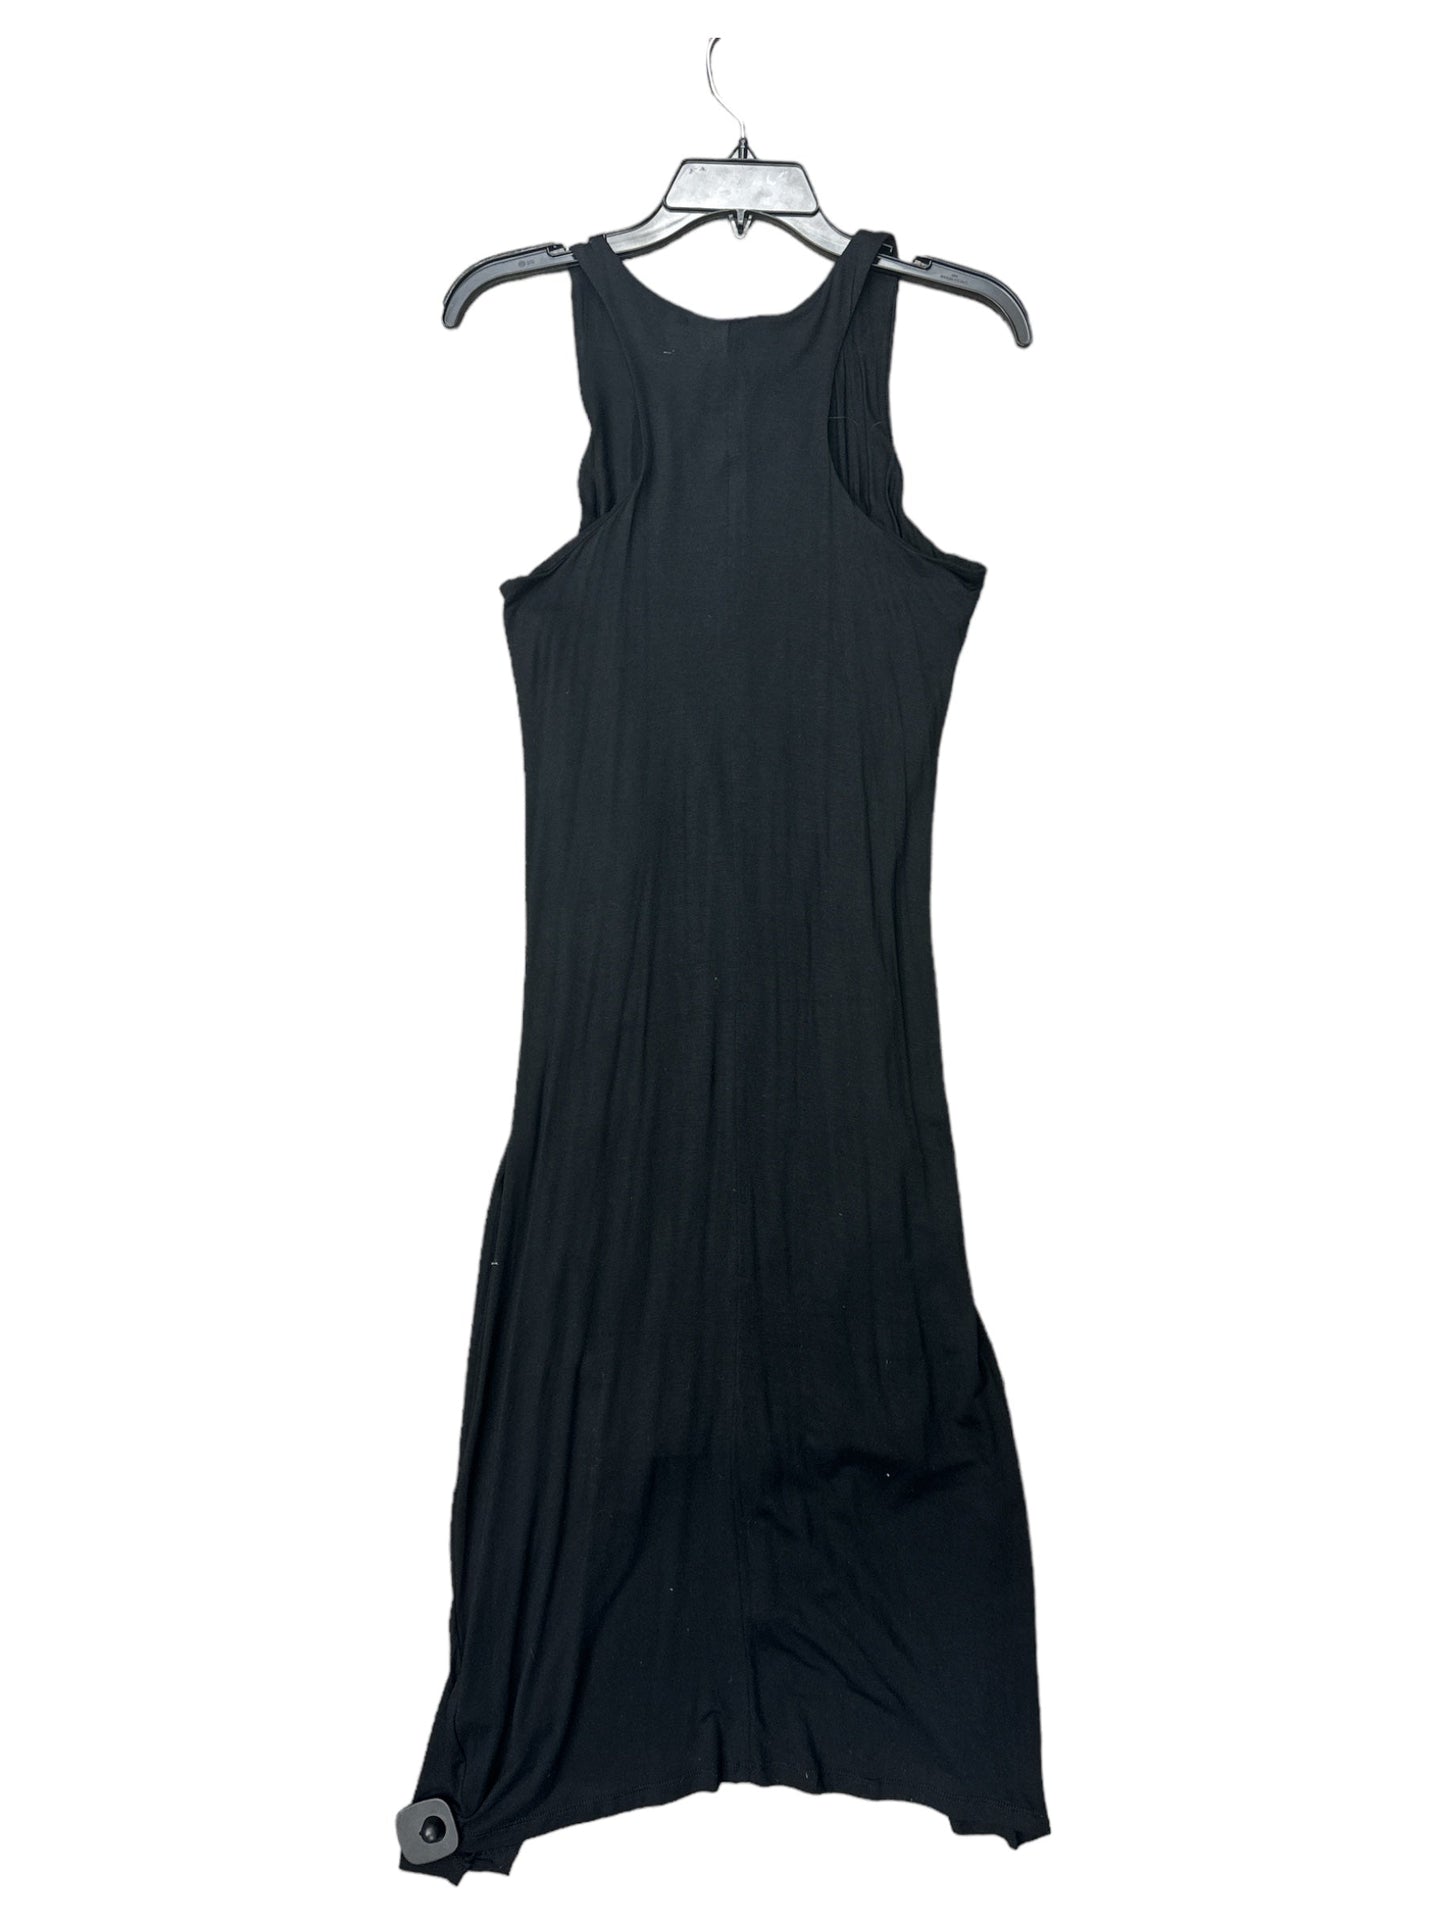 Dress Casual Maxi By Catherine Malandrino  Size: 8